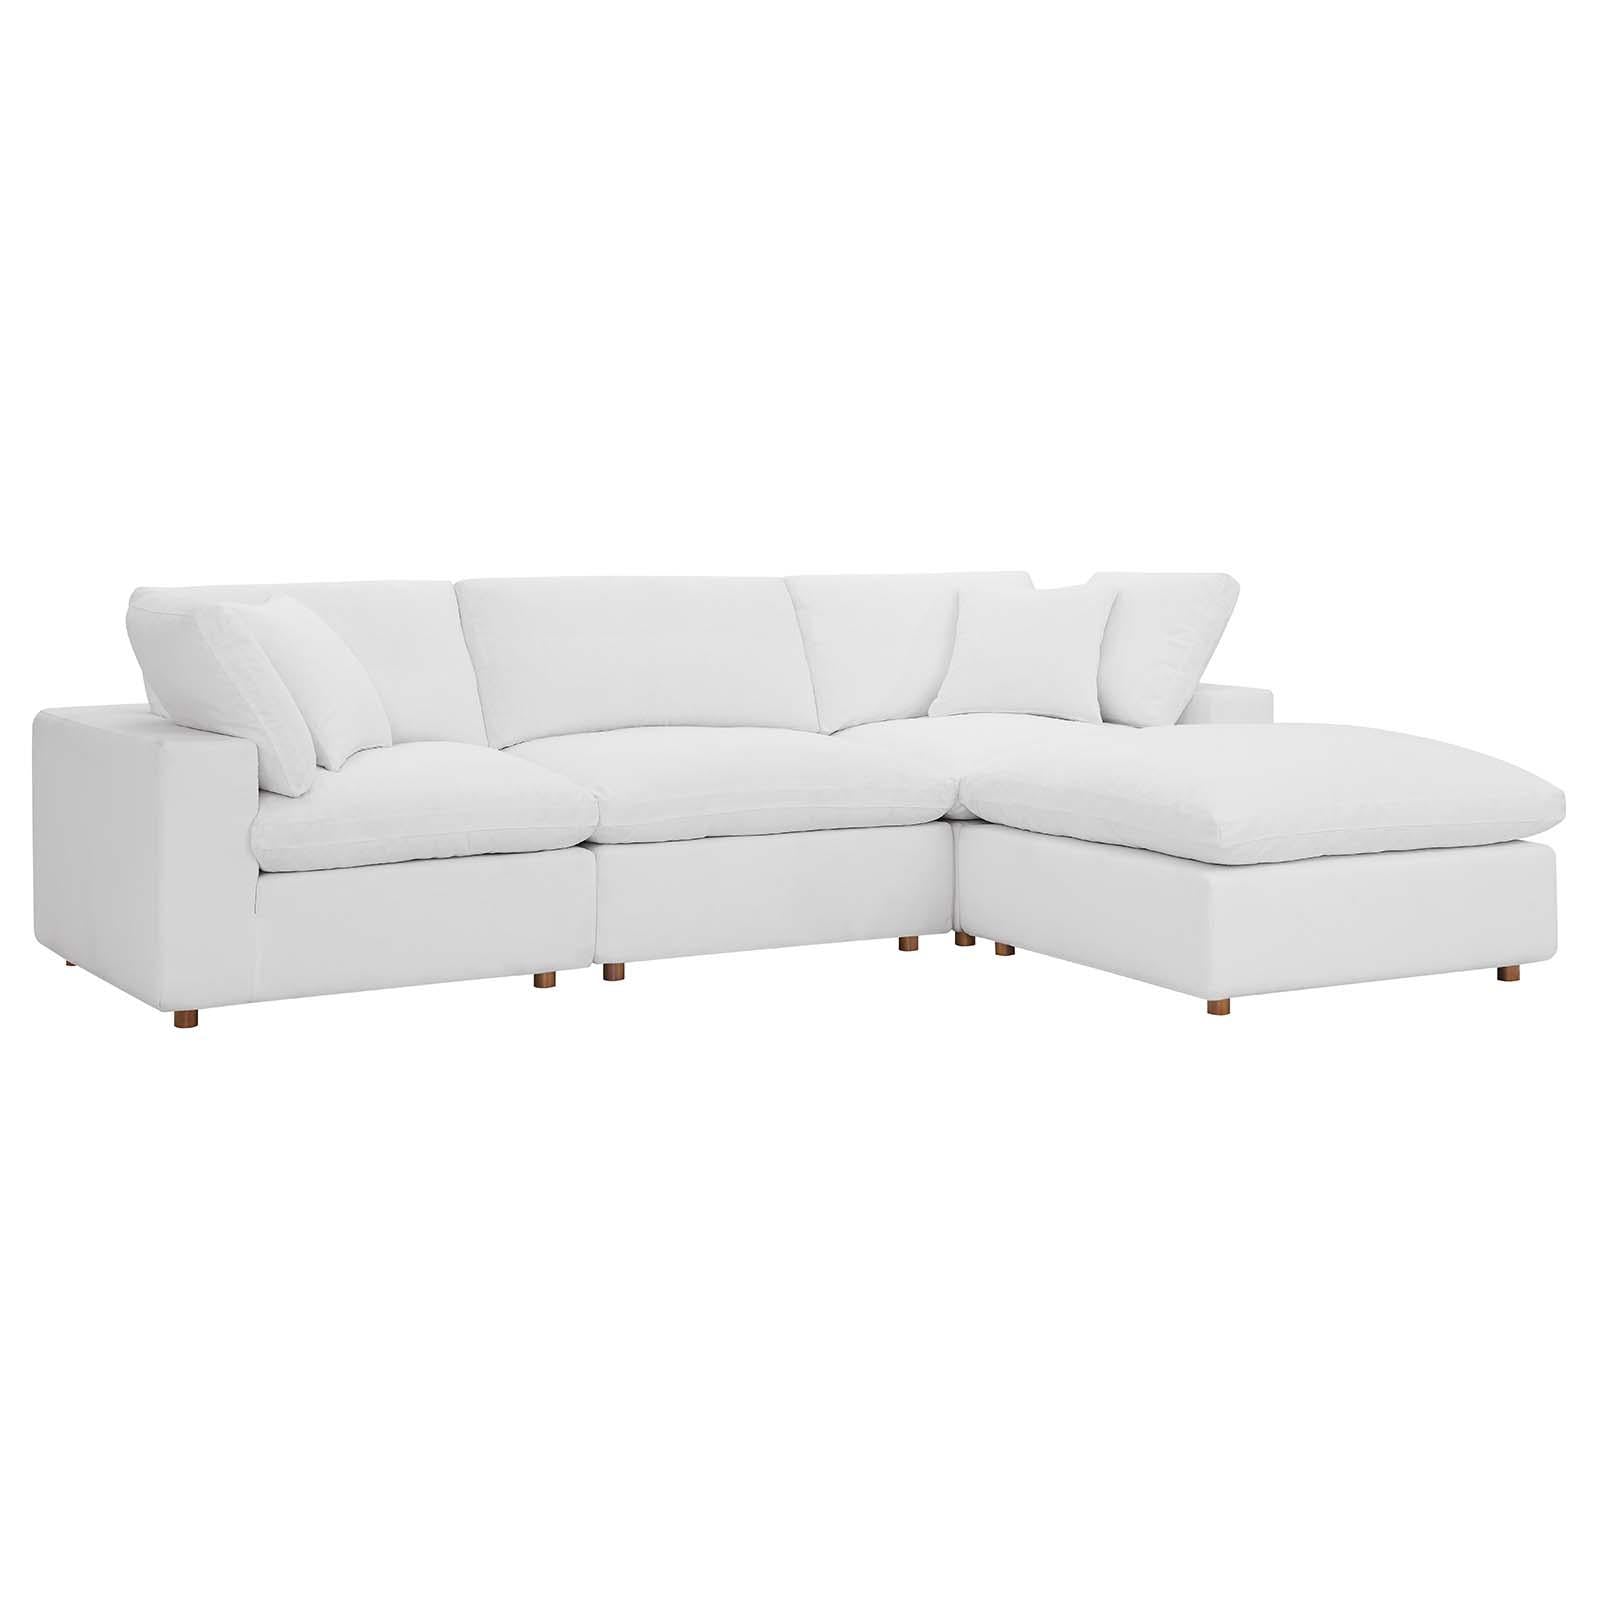 Modway Furniture Modern Commix Down Filled Overstuffed 4 Piece Sectional Sofa Set - EEI-3356